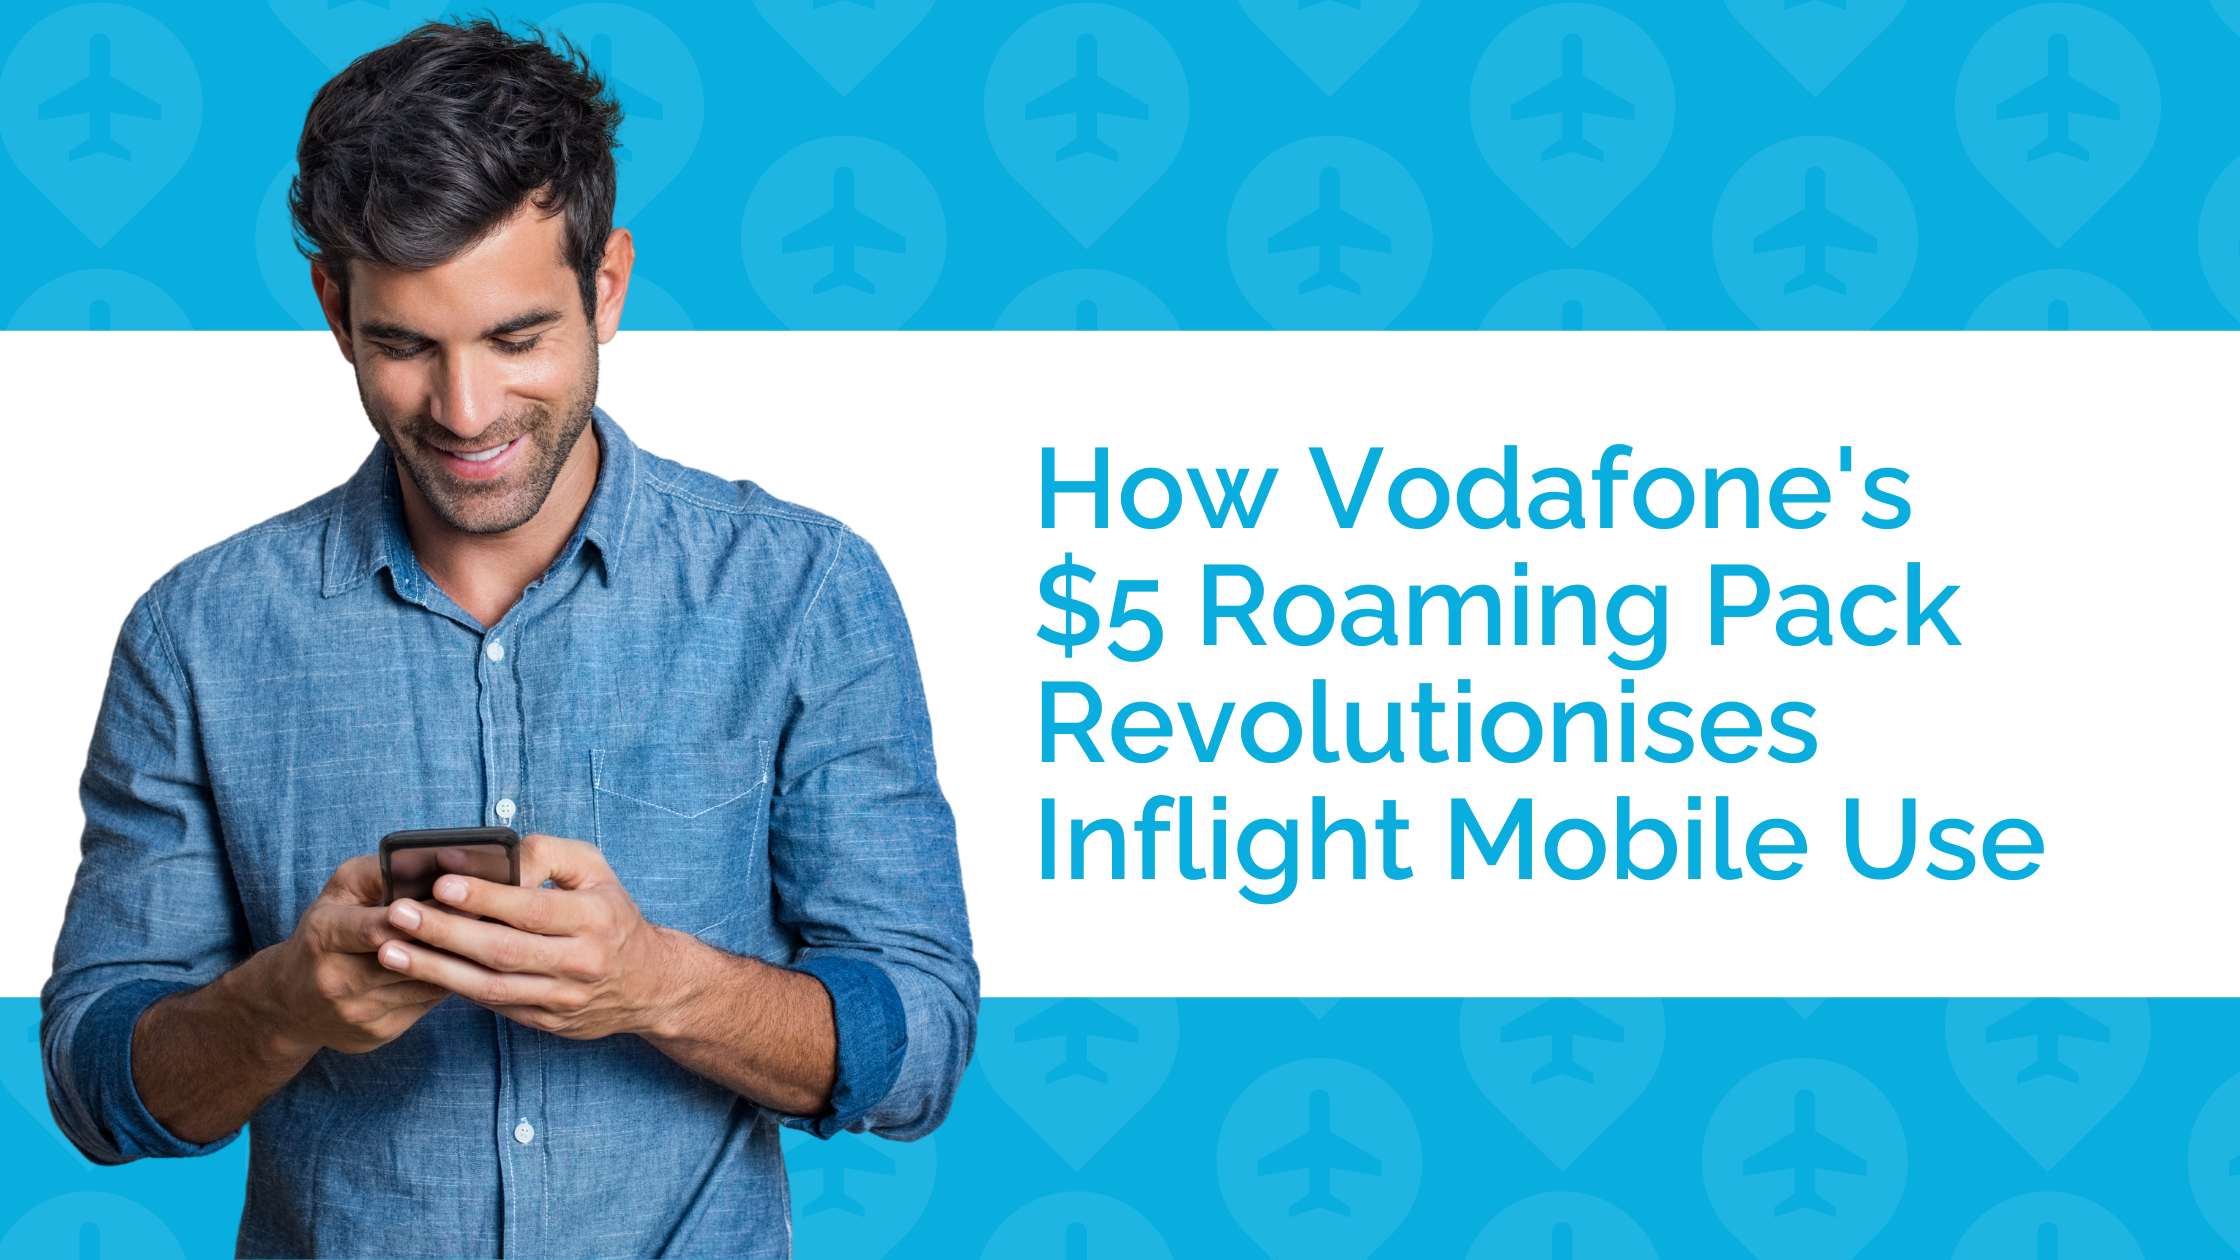 How Vodafone's $5 Roaming Pack Revolutionises Inflight Mobile Use